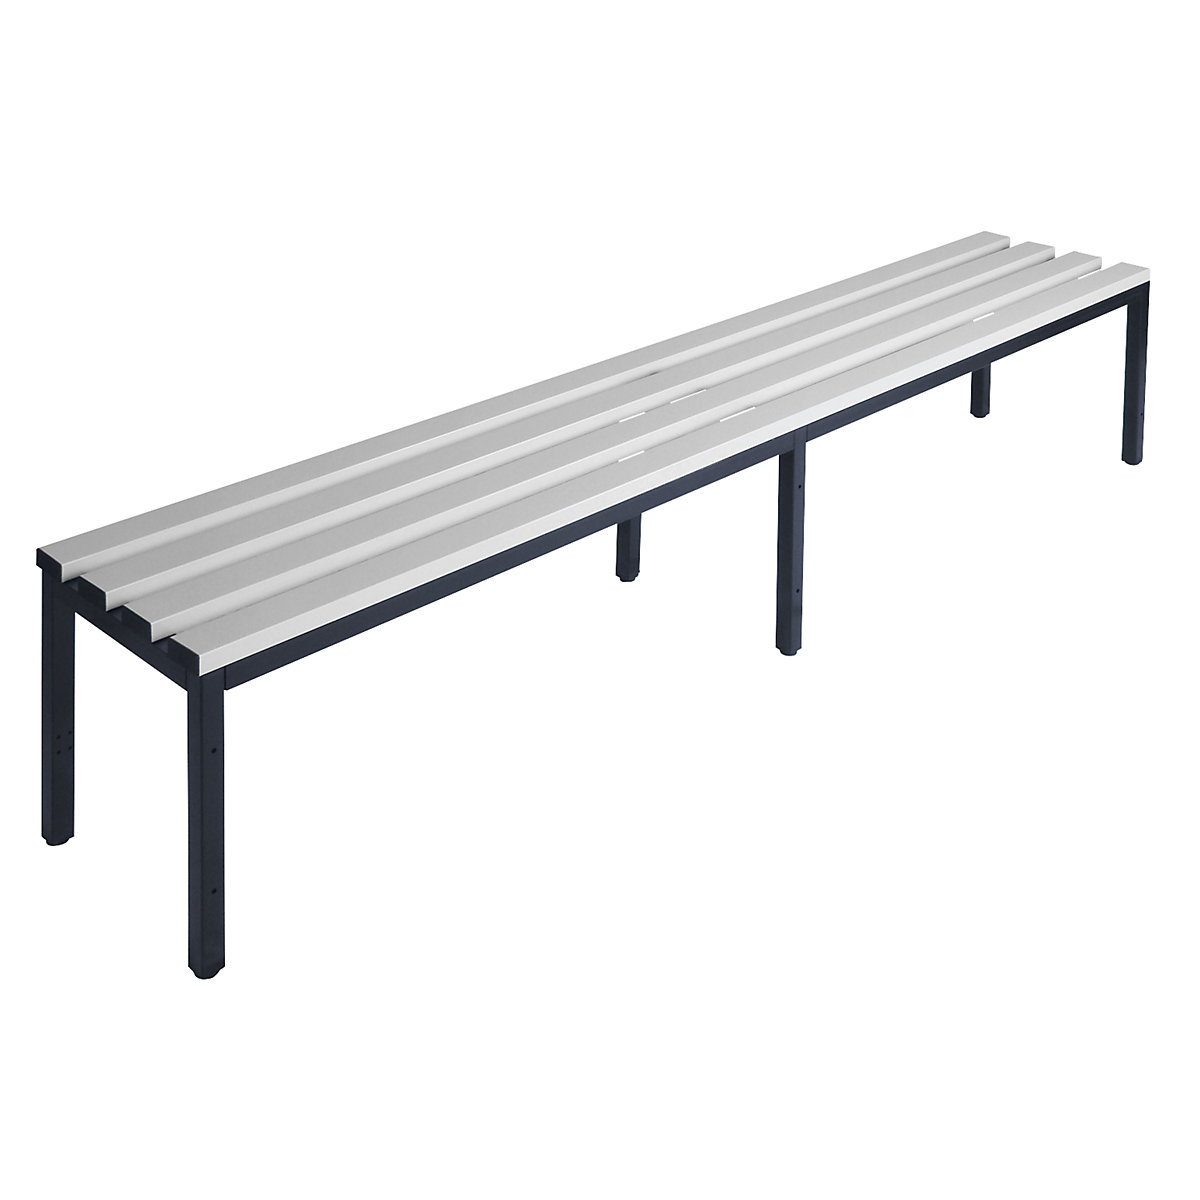 Šatnová lavice bez opěradla – Wolf, lišty z PVC, šedá, délka 2000 mm-5